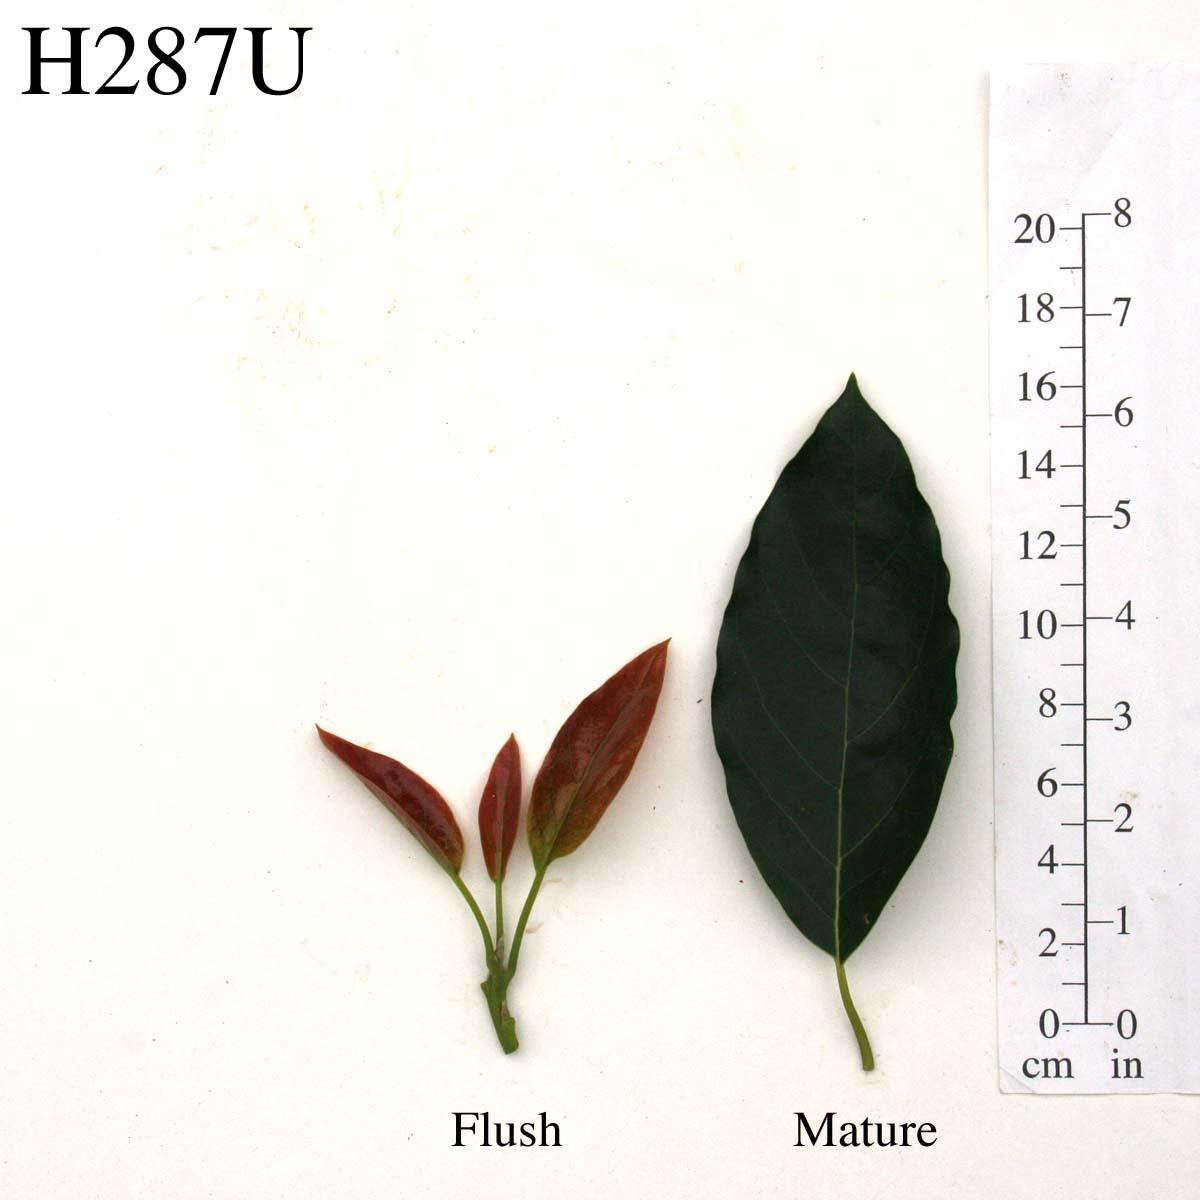 H287U Leaves